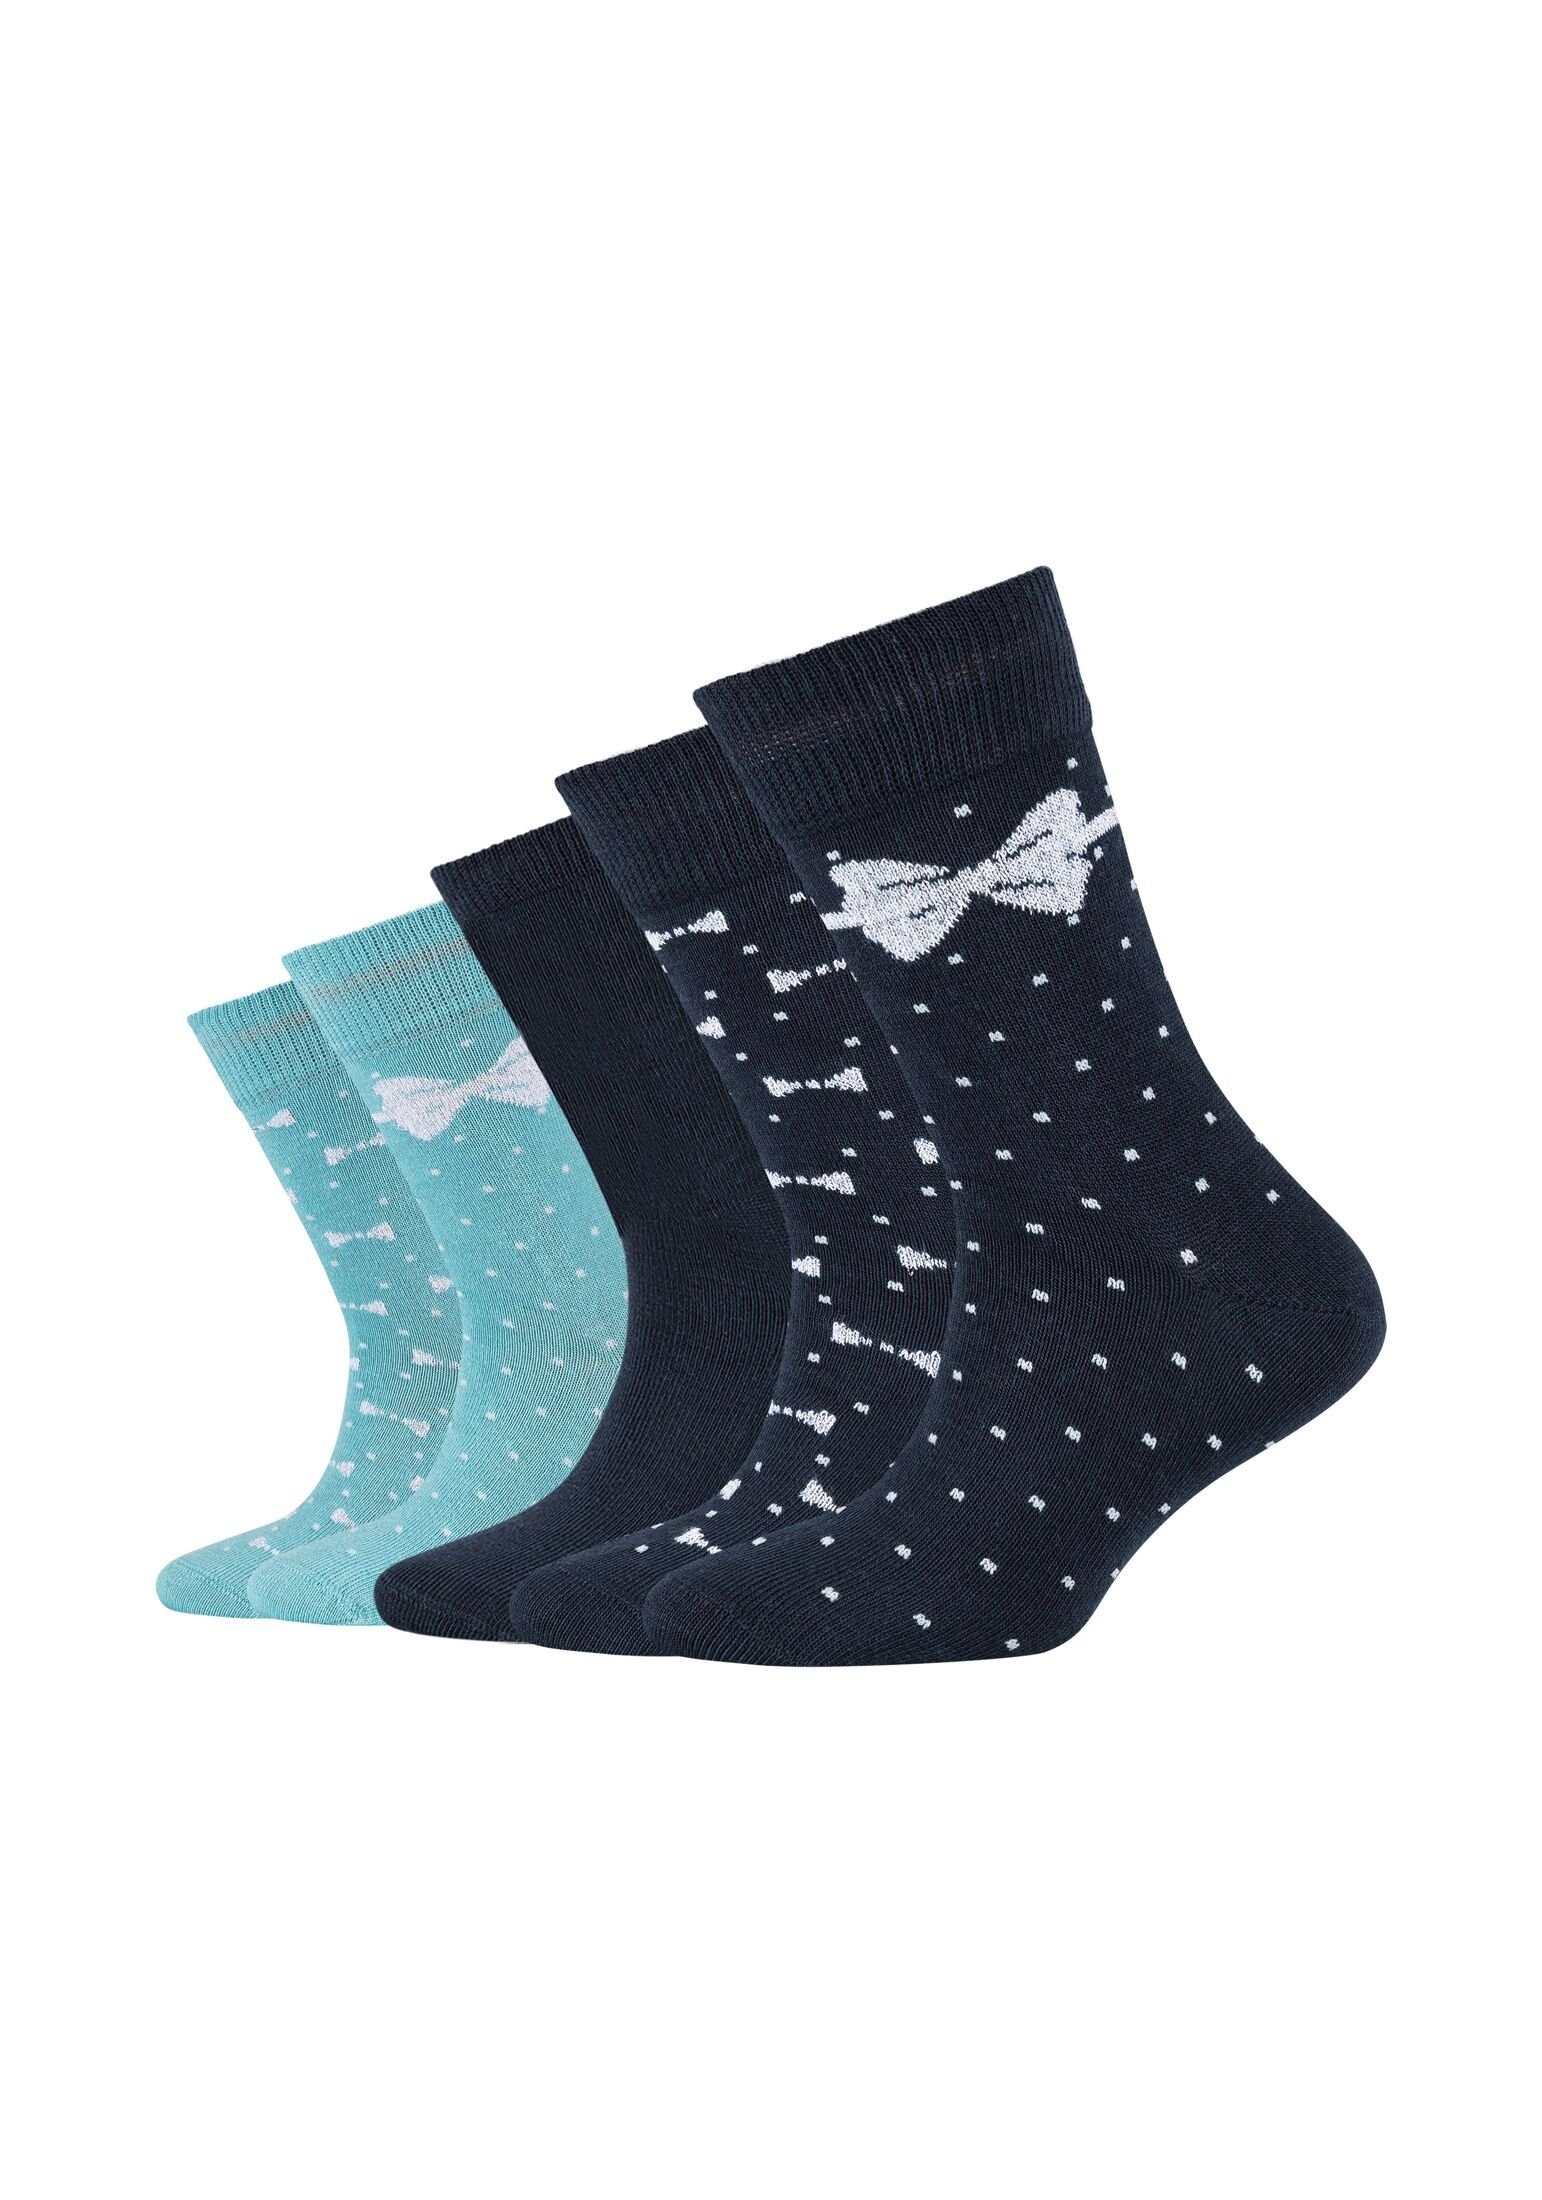 Camano Socken Socken 5er Pack | Socken